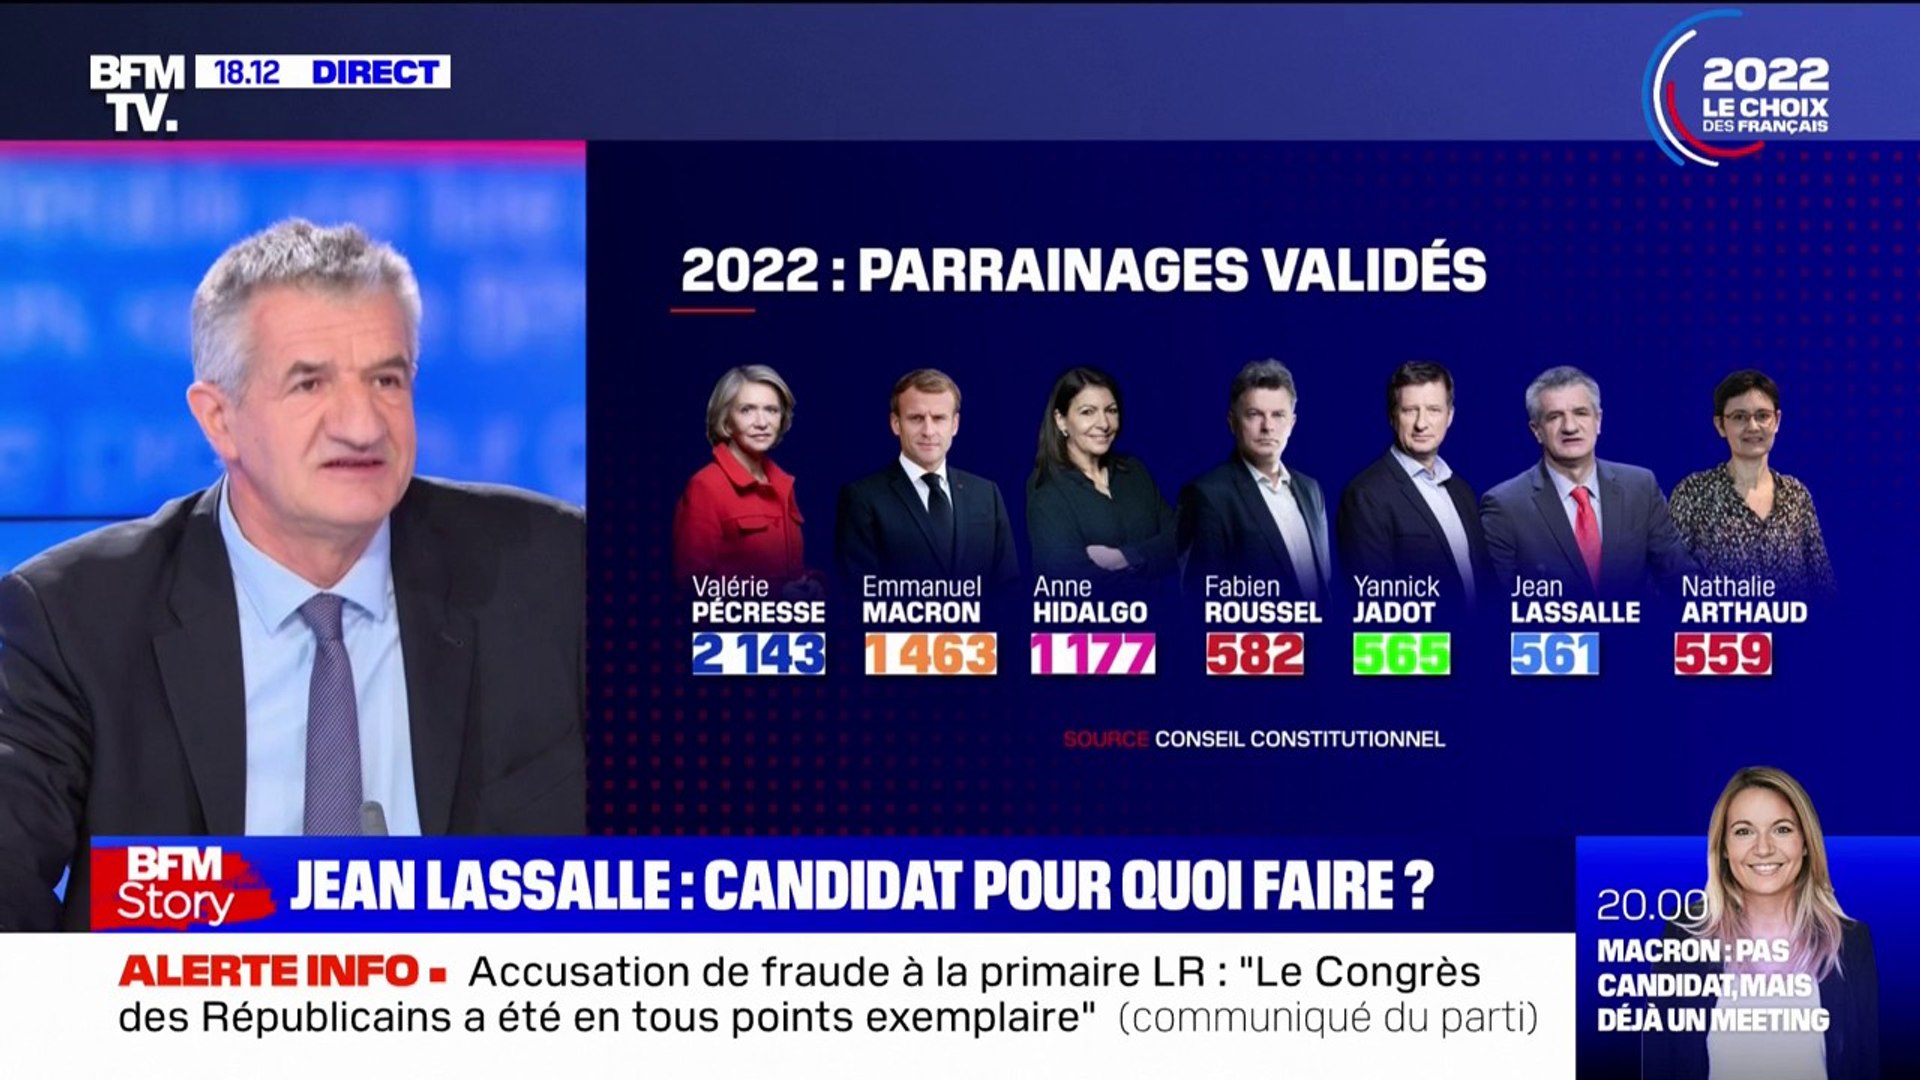 Jean Lassalle: "Je suis candidat parce qu'il y a beaucoup de choses à dire  qui ne sont pas dites" - Vidéo Dailymotion